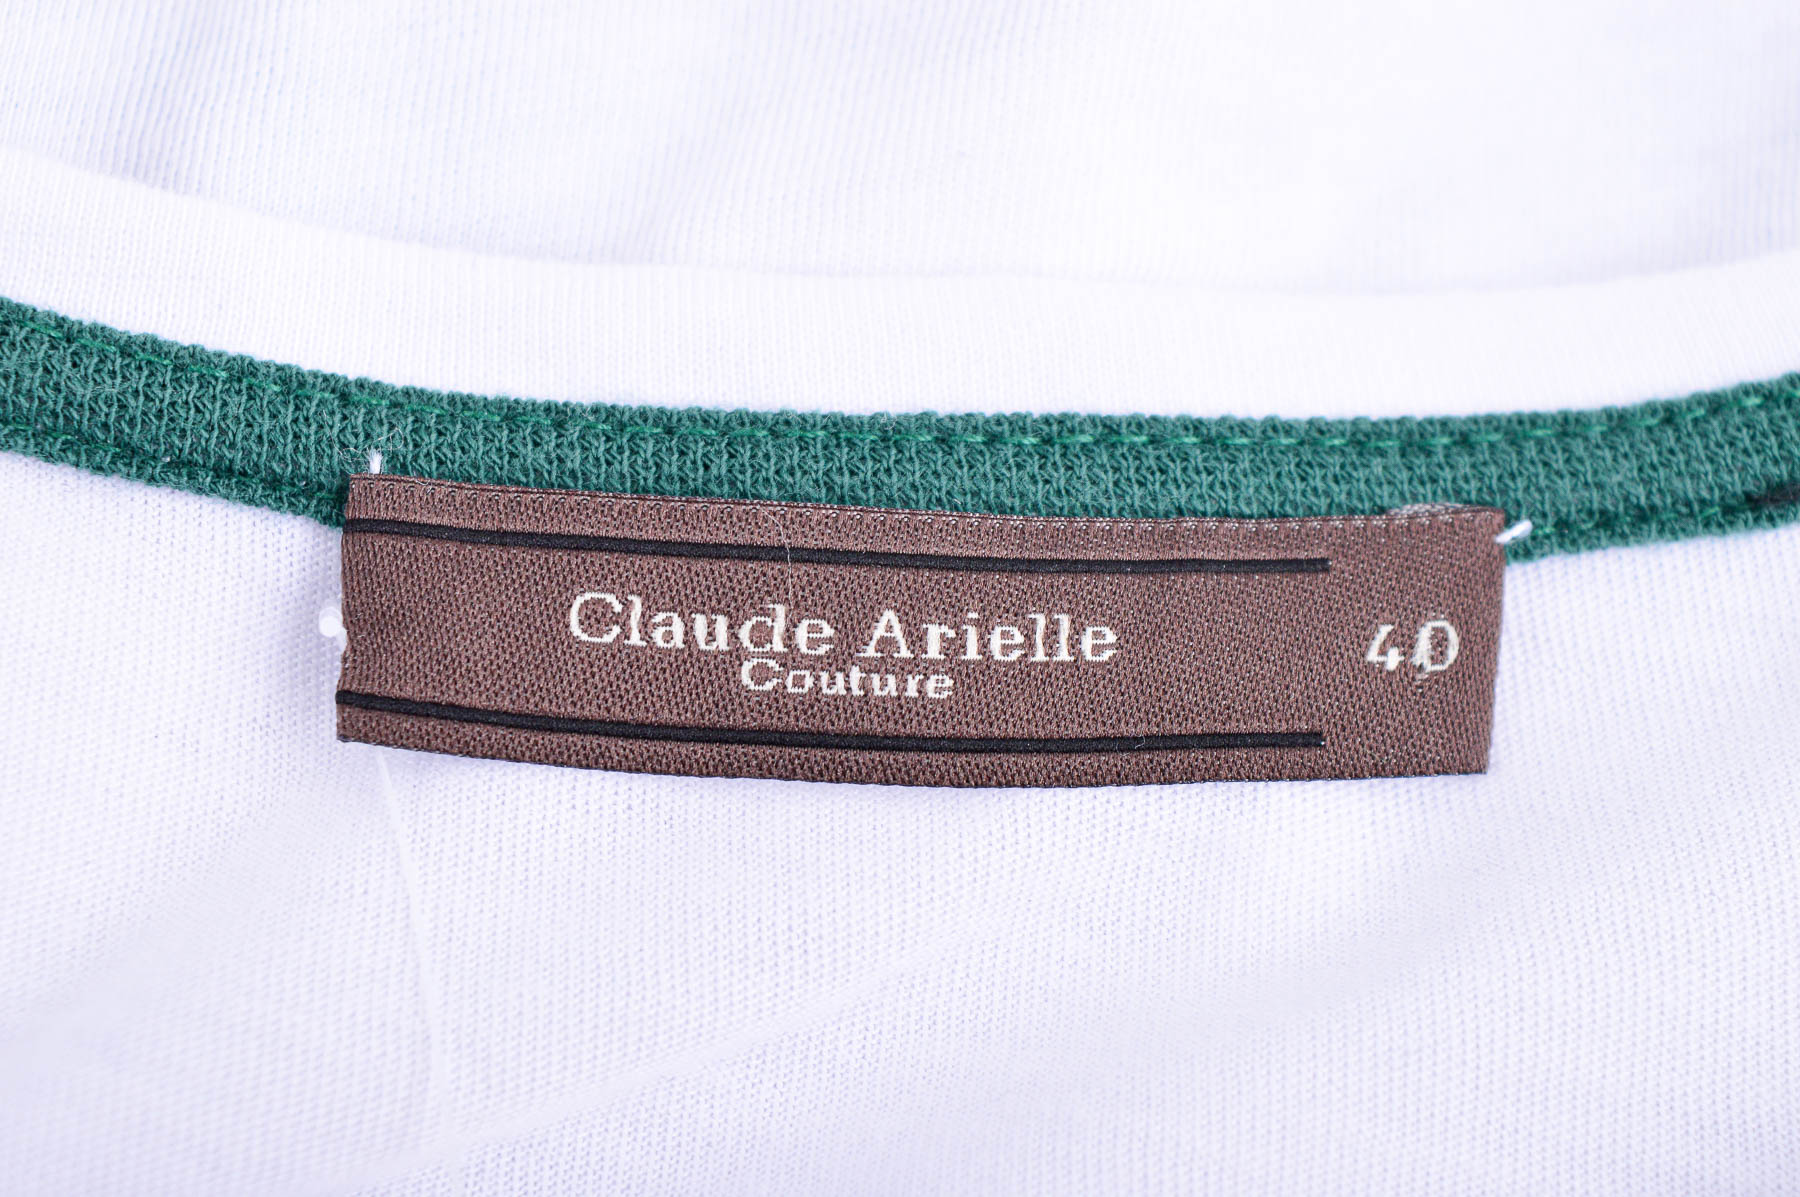 Γυναικεία μπλούζα - Claude Arielle - 2